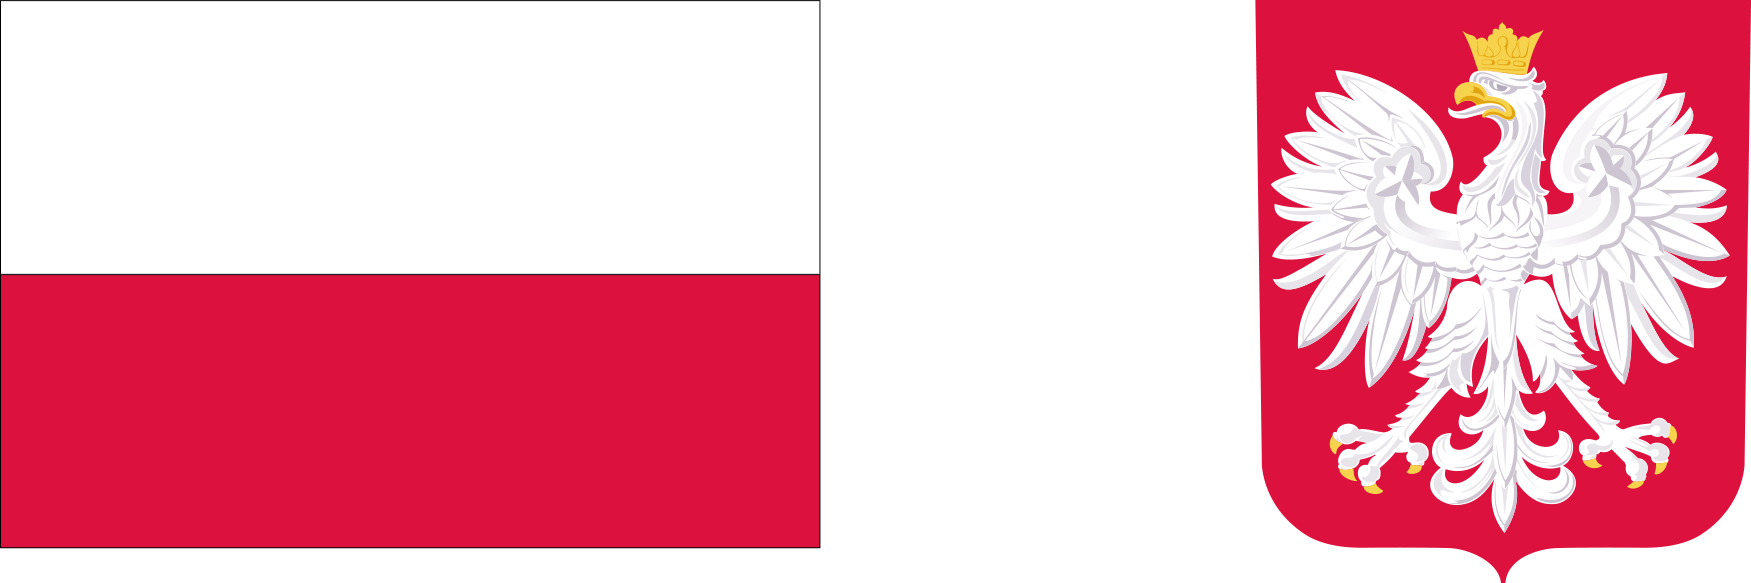 Z lewej strony flaga Polski, z prawej godło.